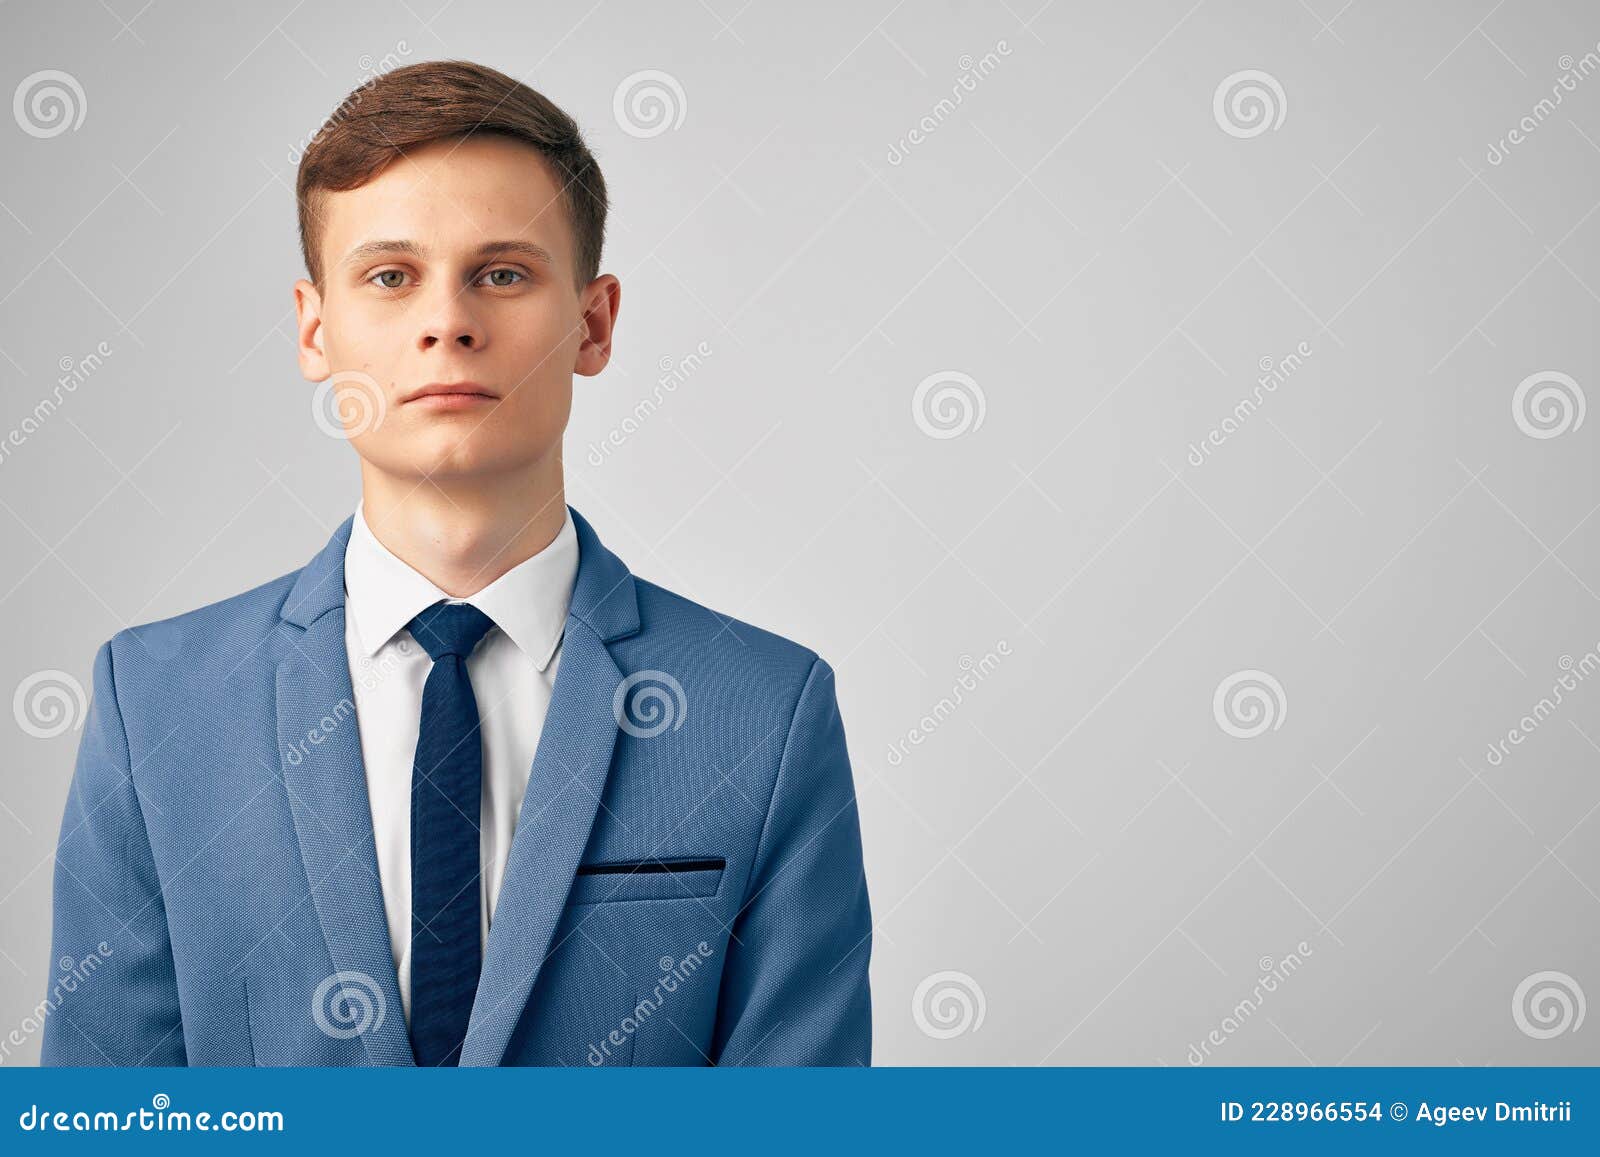 Homme Avec Une Veste Dans Une Cravate Cadre Professionnel Photo stock -  Image du attrayant, compétence: 228966554